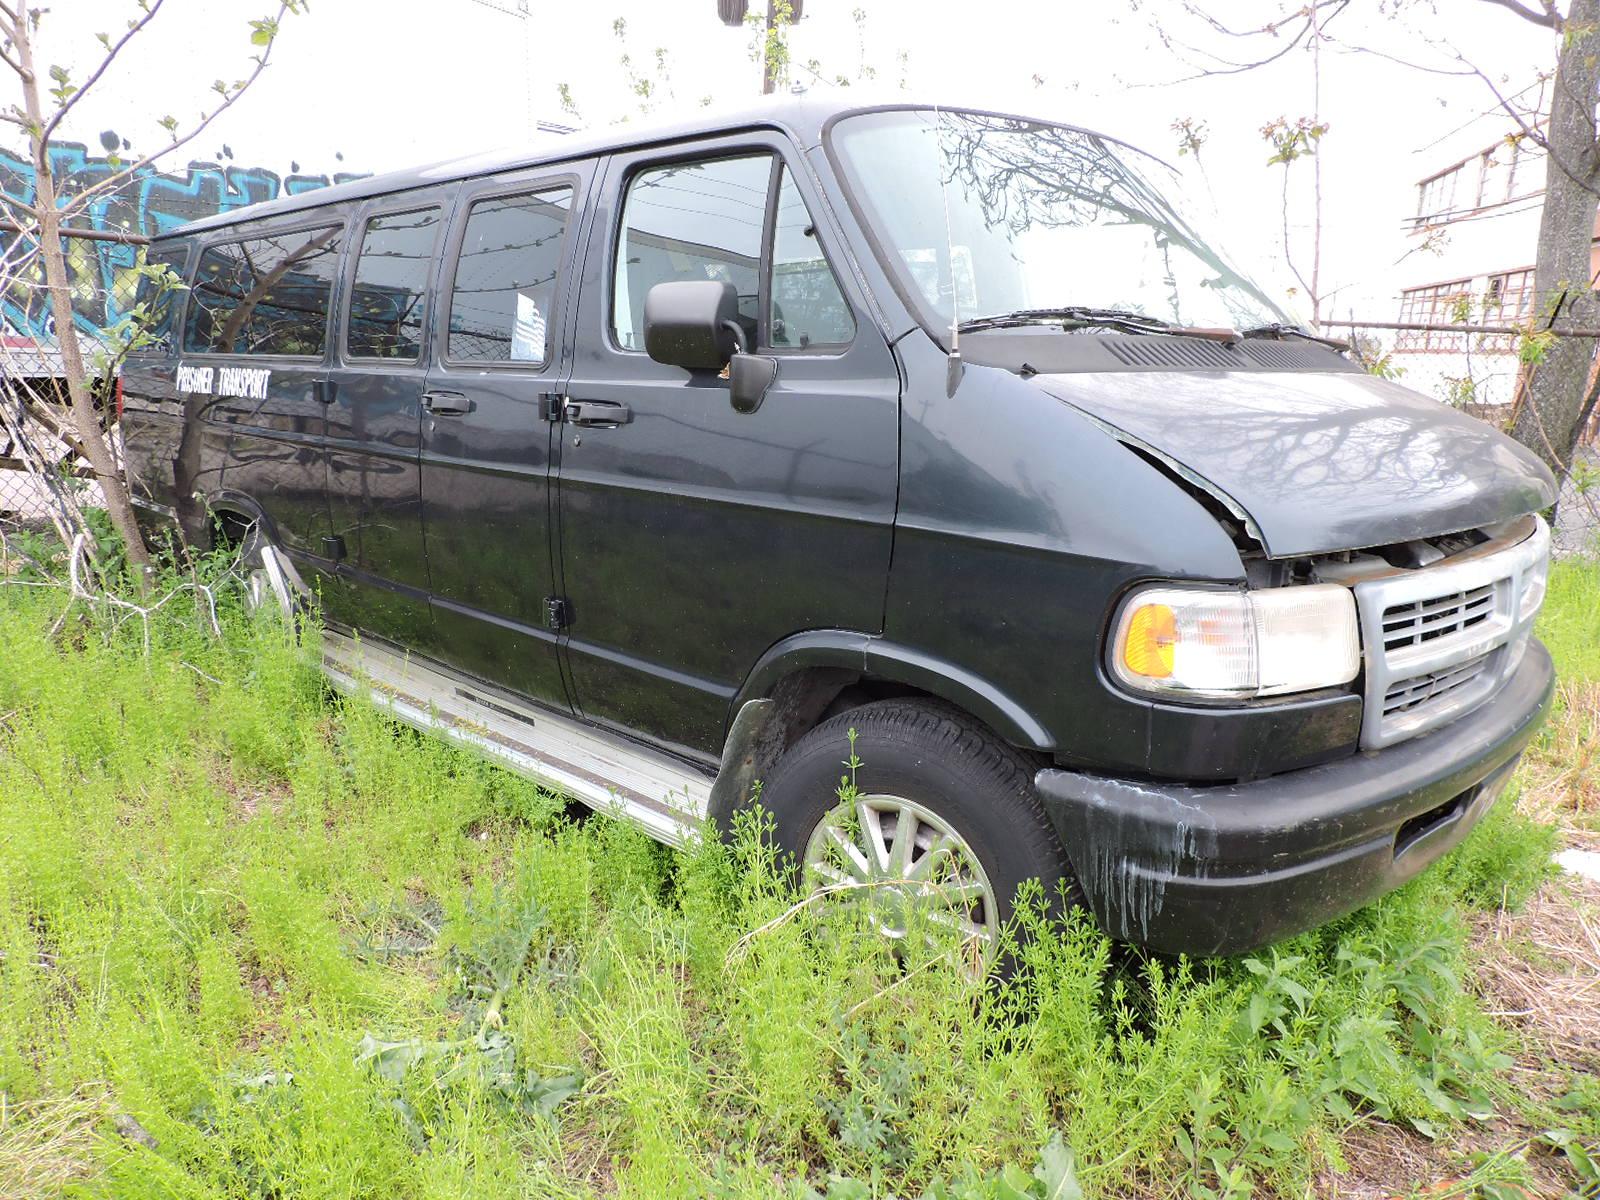 1996 Dodge RAM Van - 3500 Extended Passenger Van - No Title